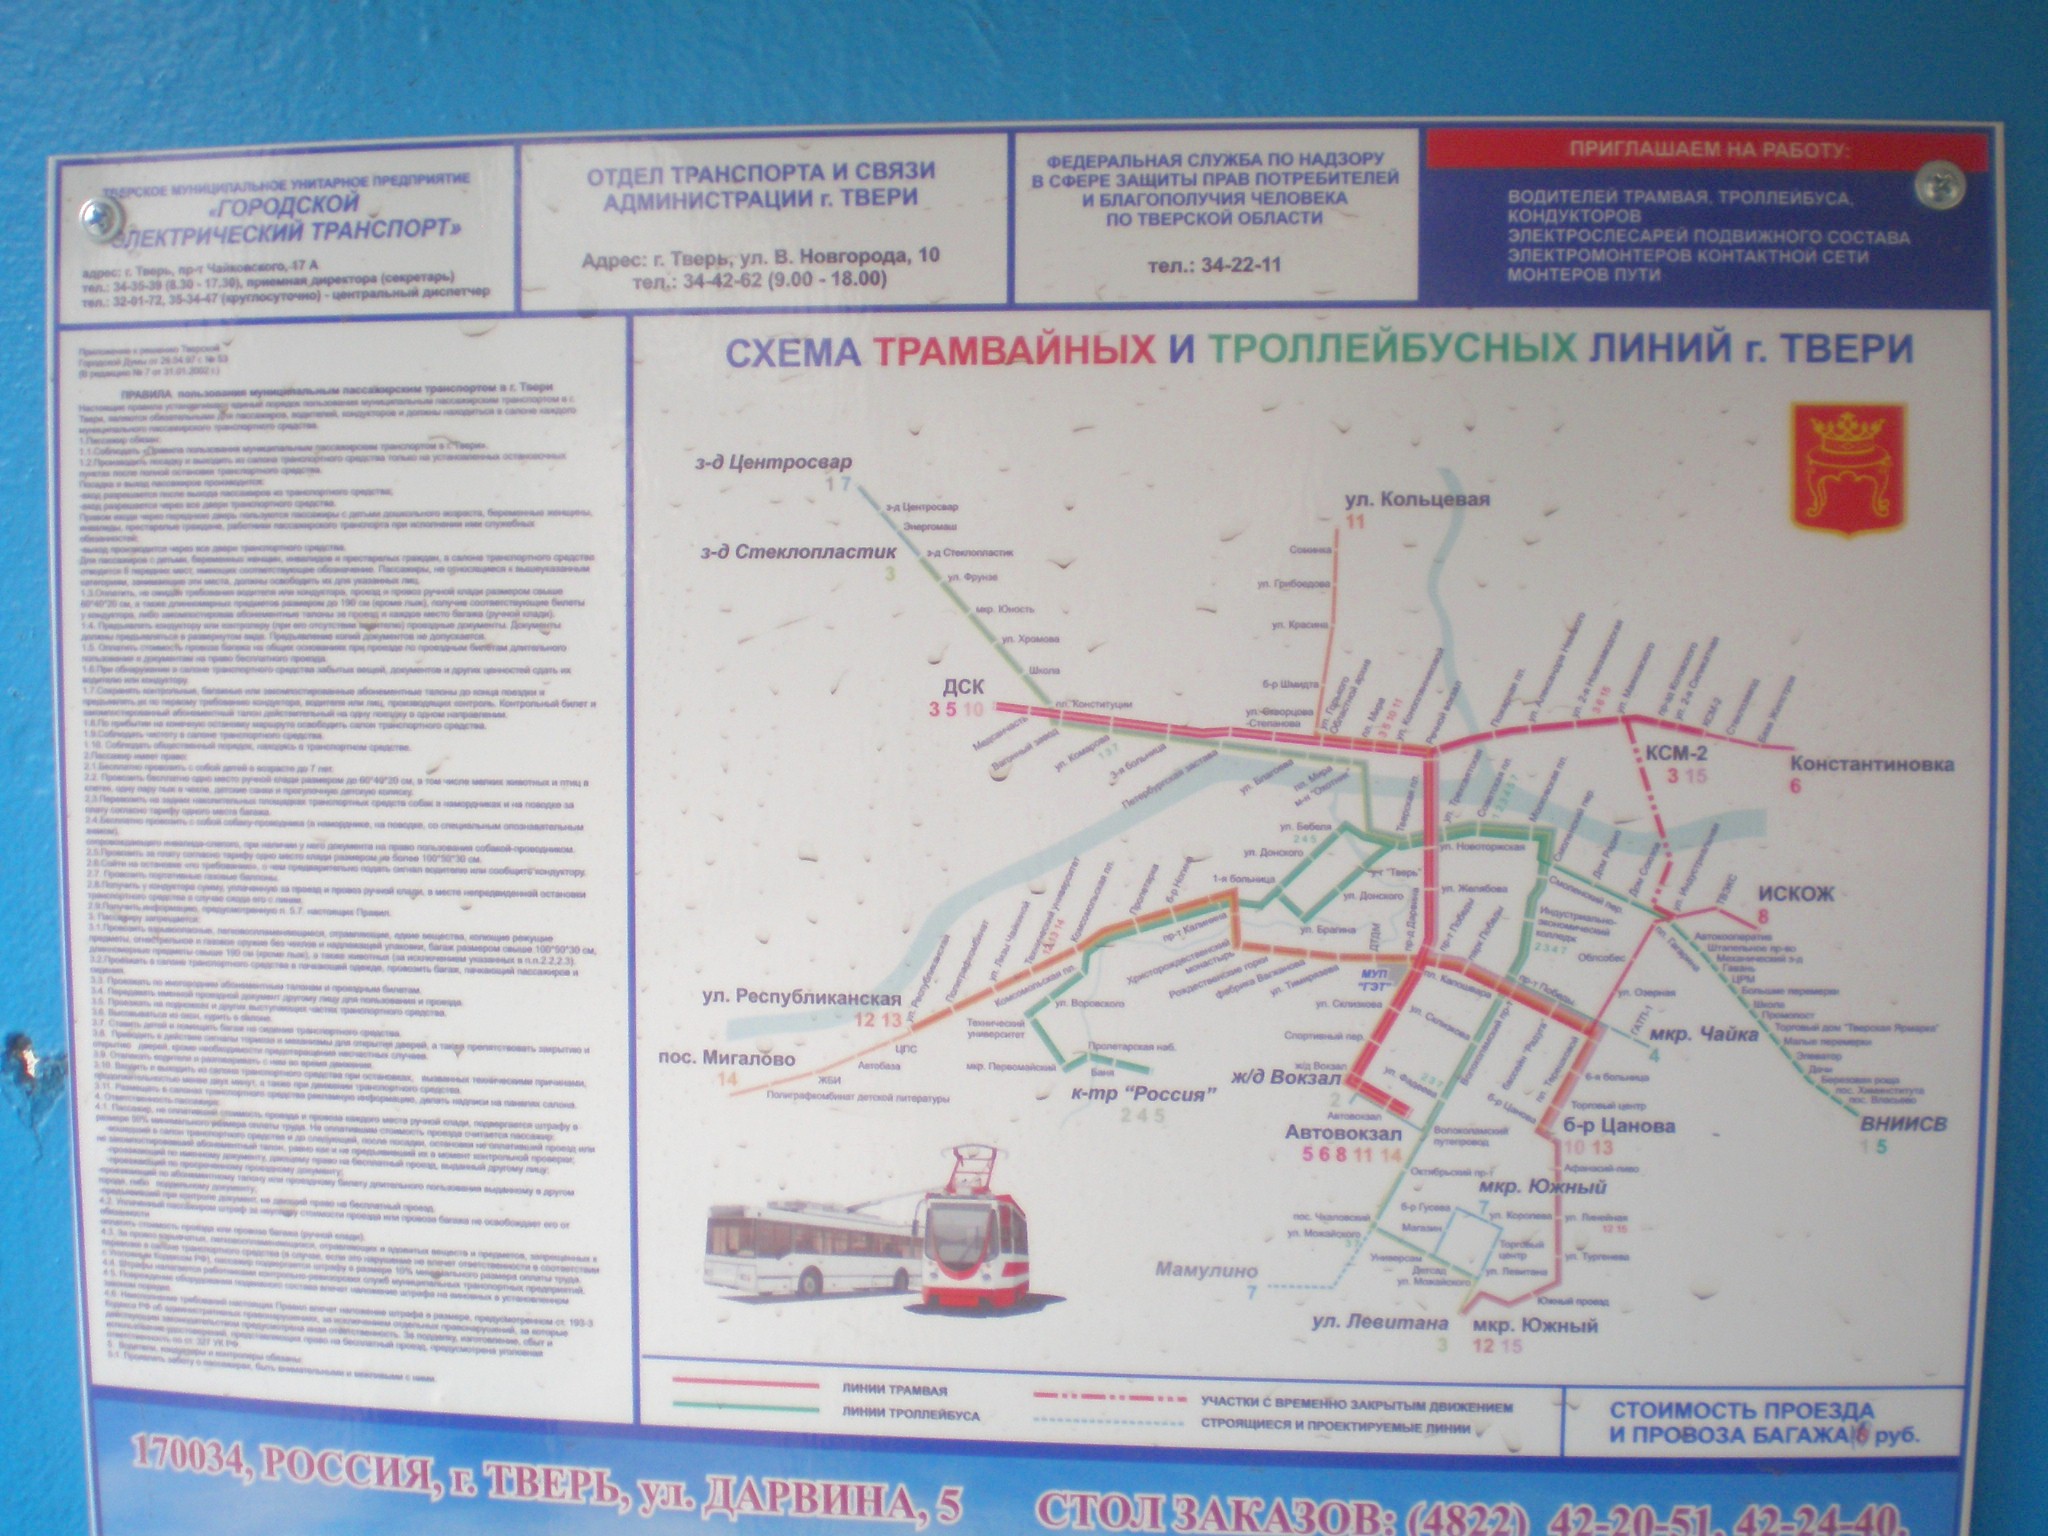 Тверской трамвай  —  фотографии, сделанные в 2009 году (часть 2)